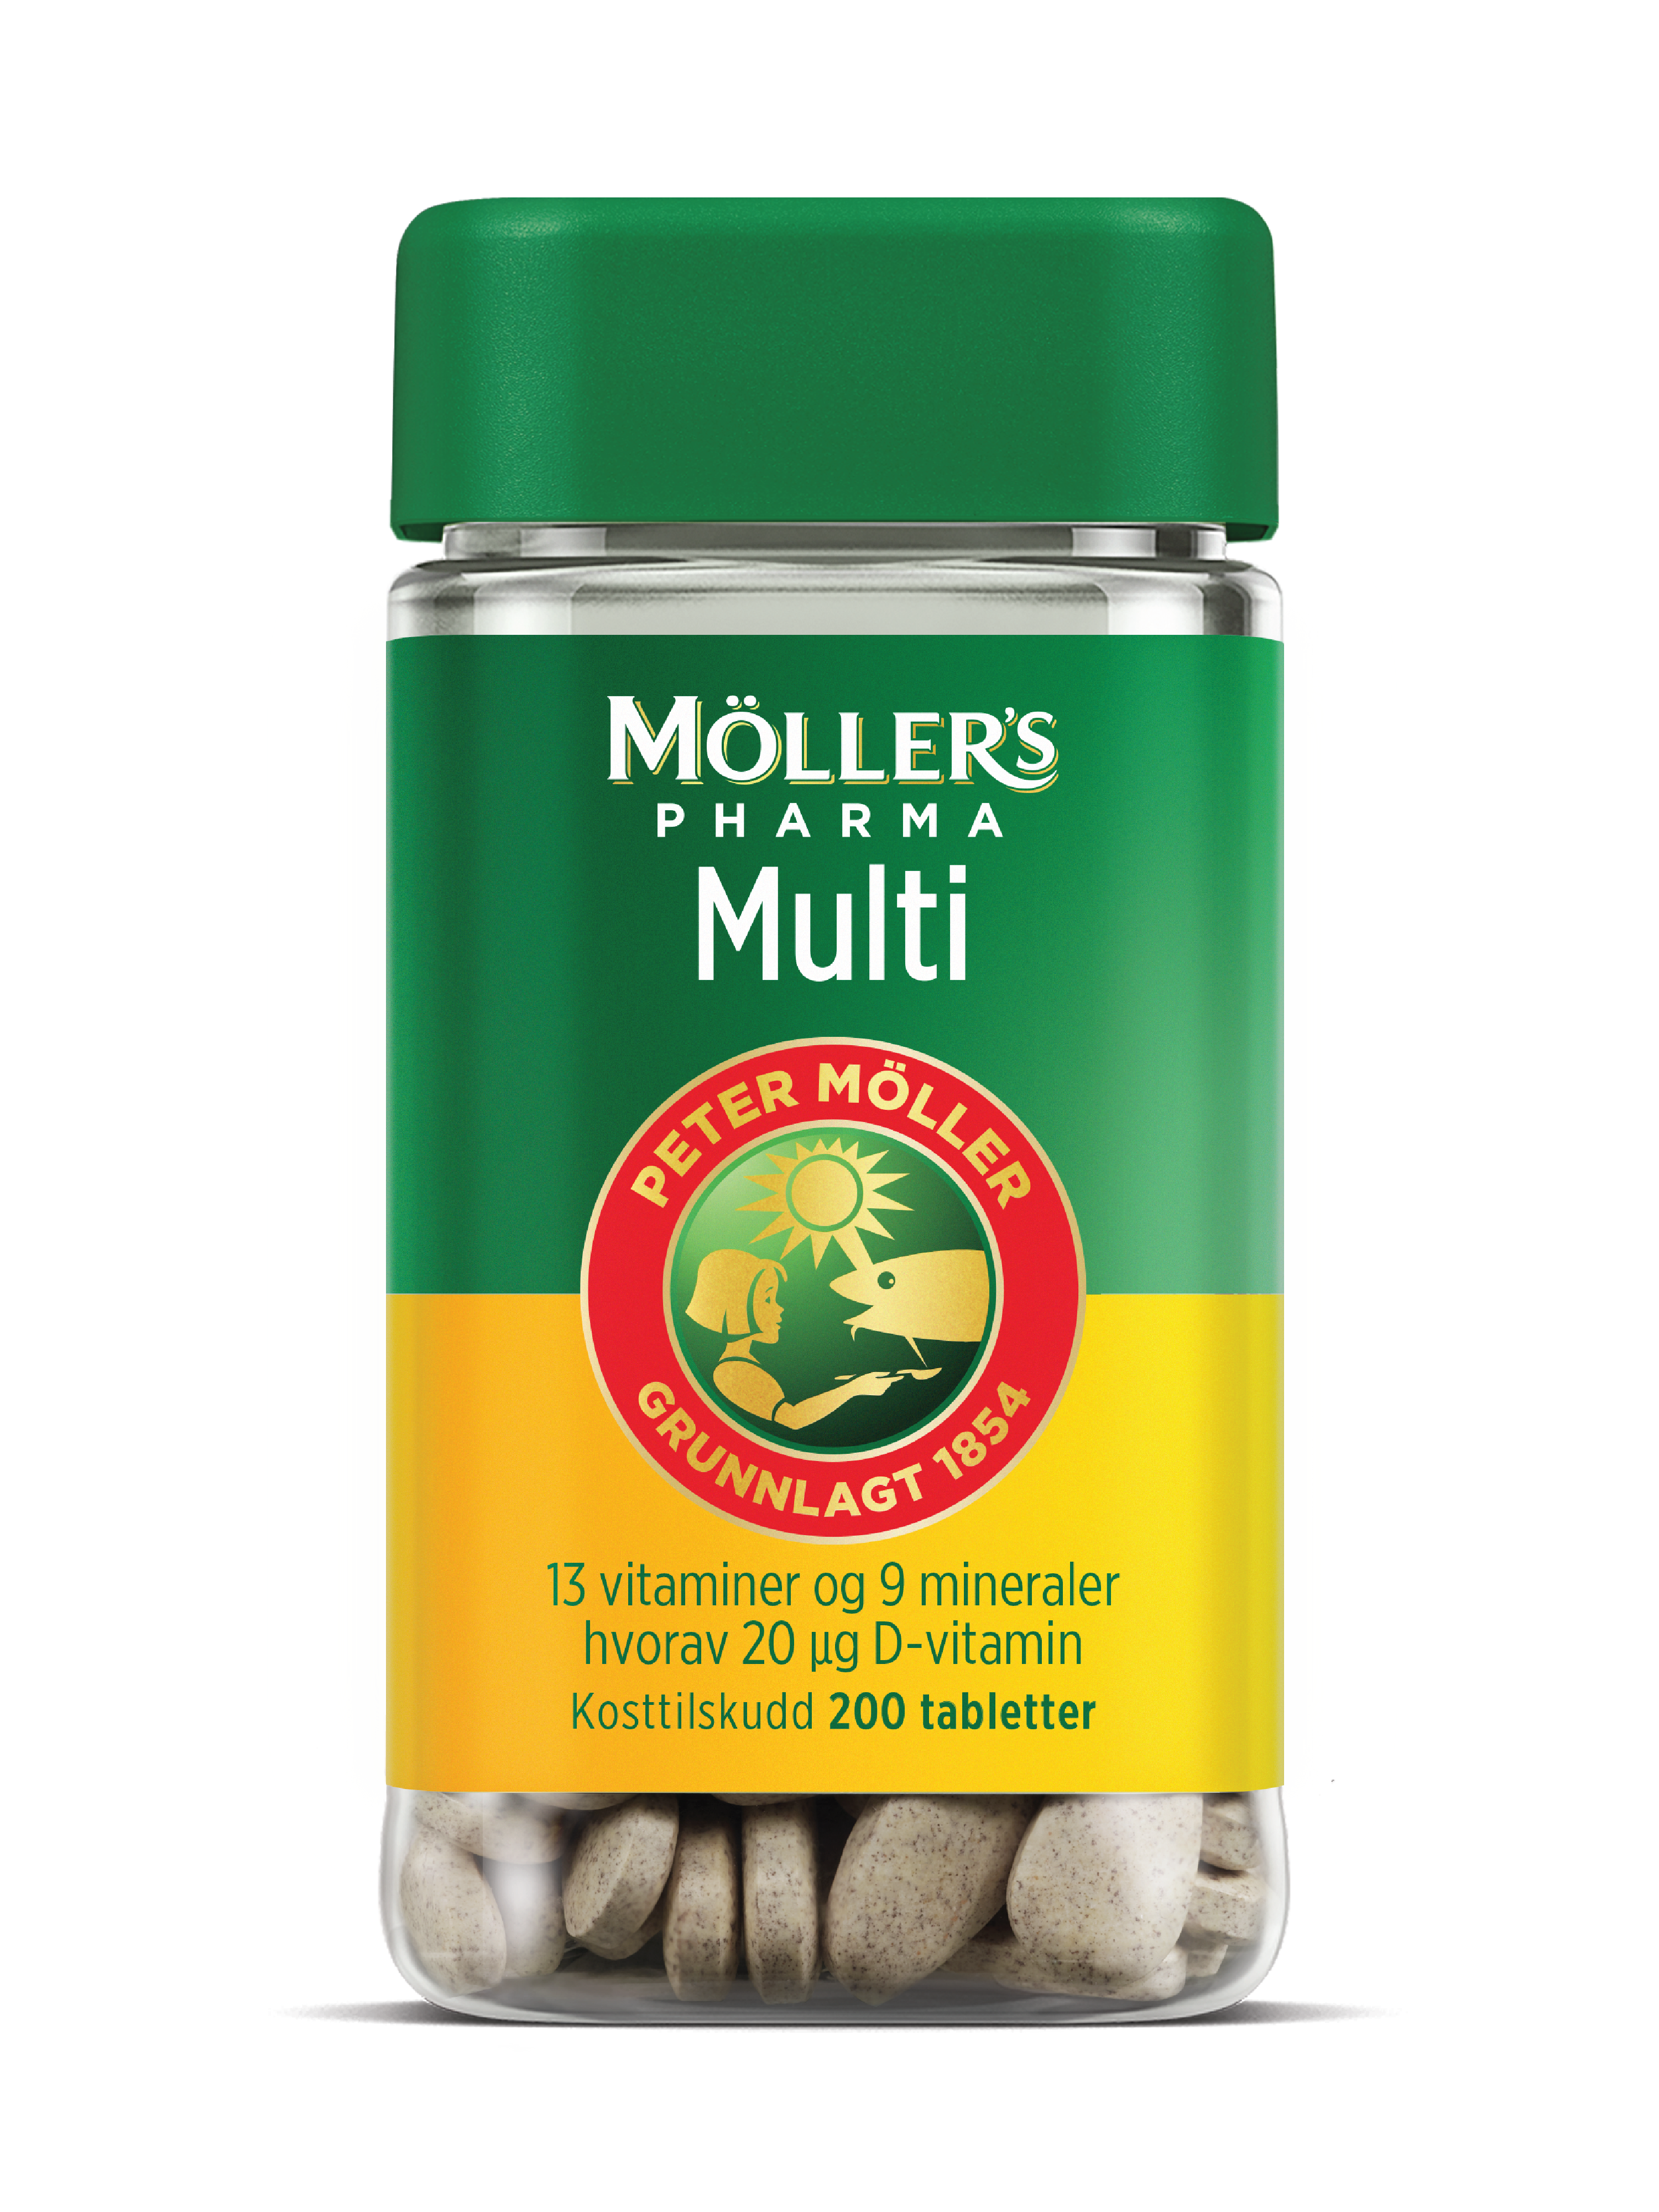 Möller's Pharma Multi tabletter, 200 stk.